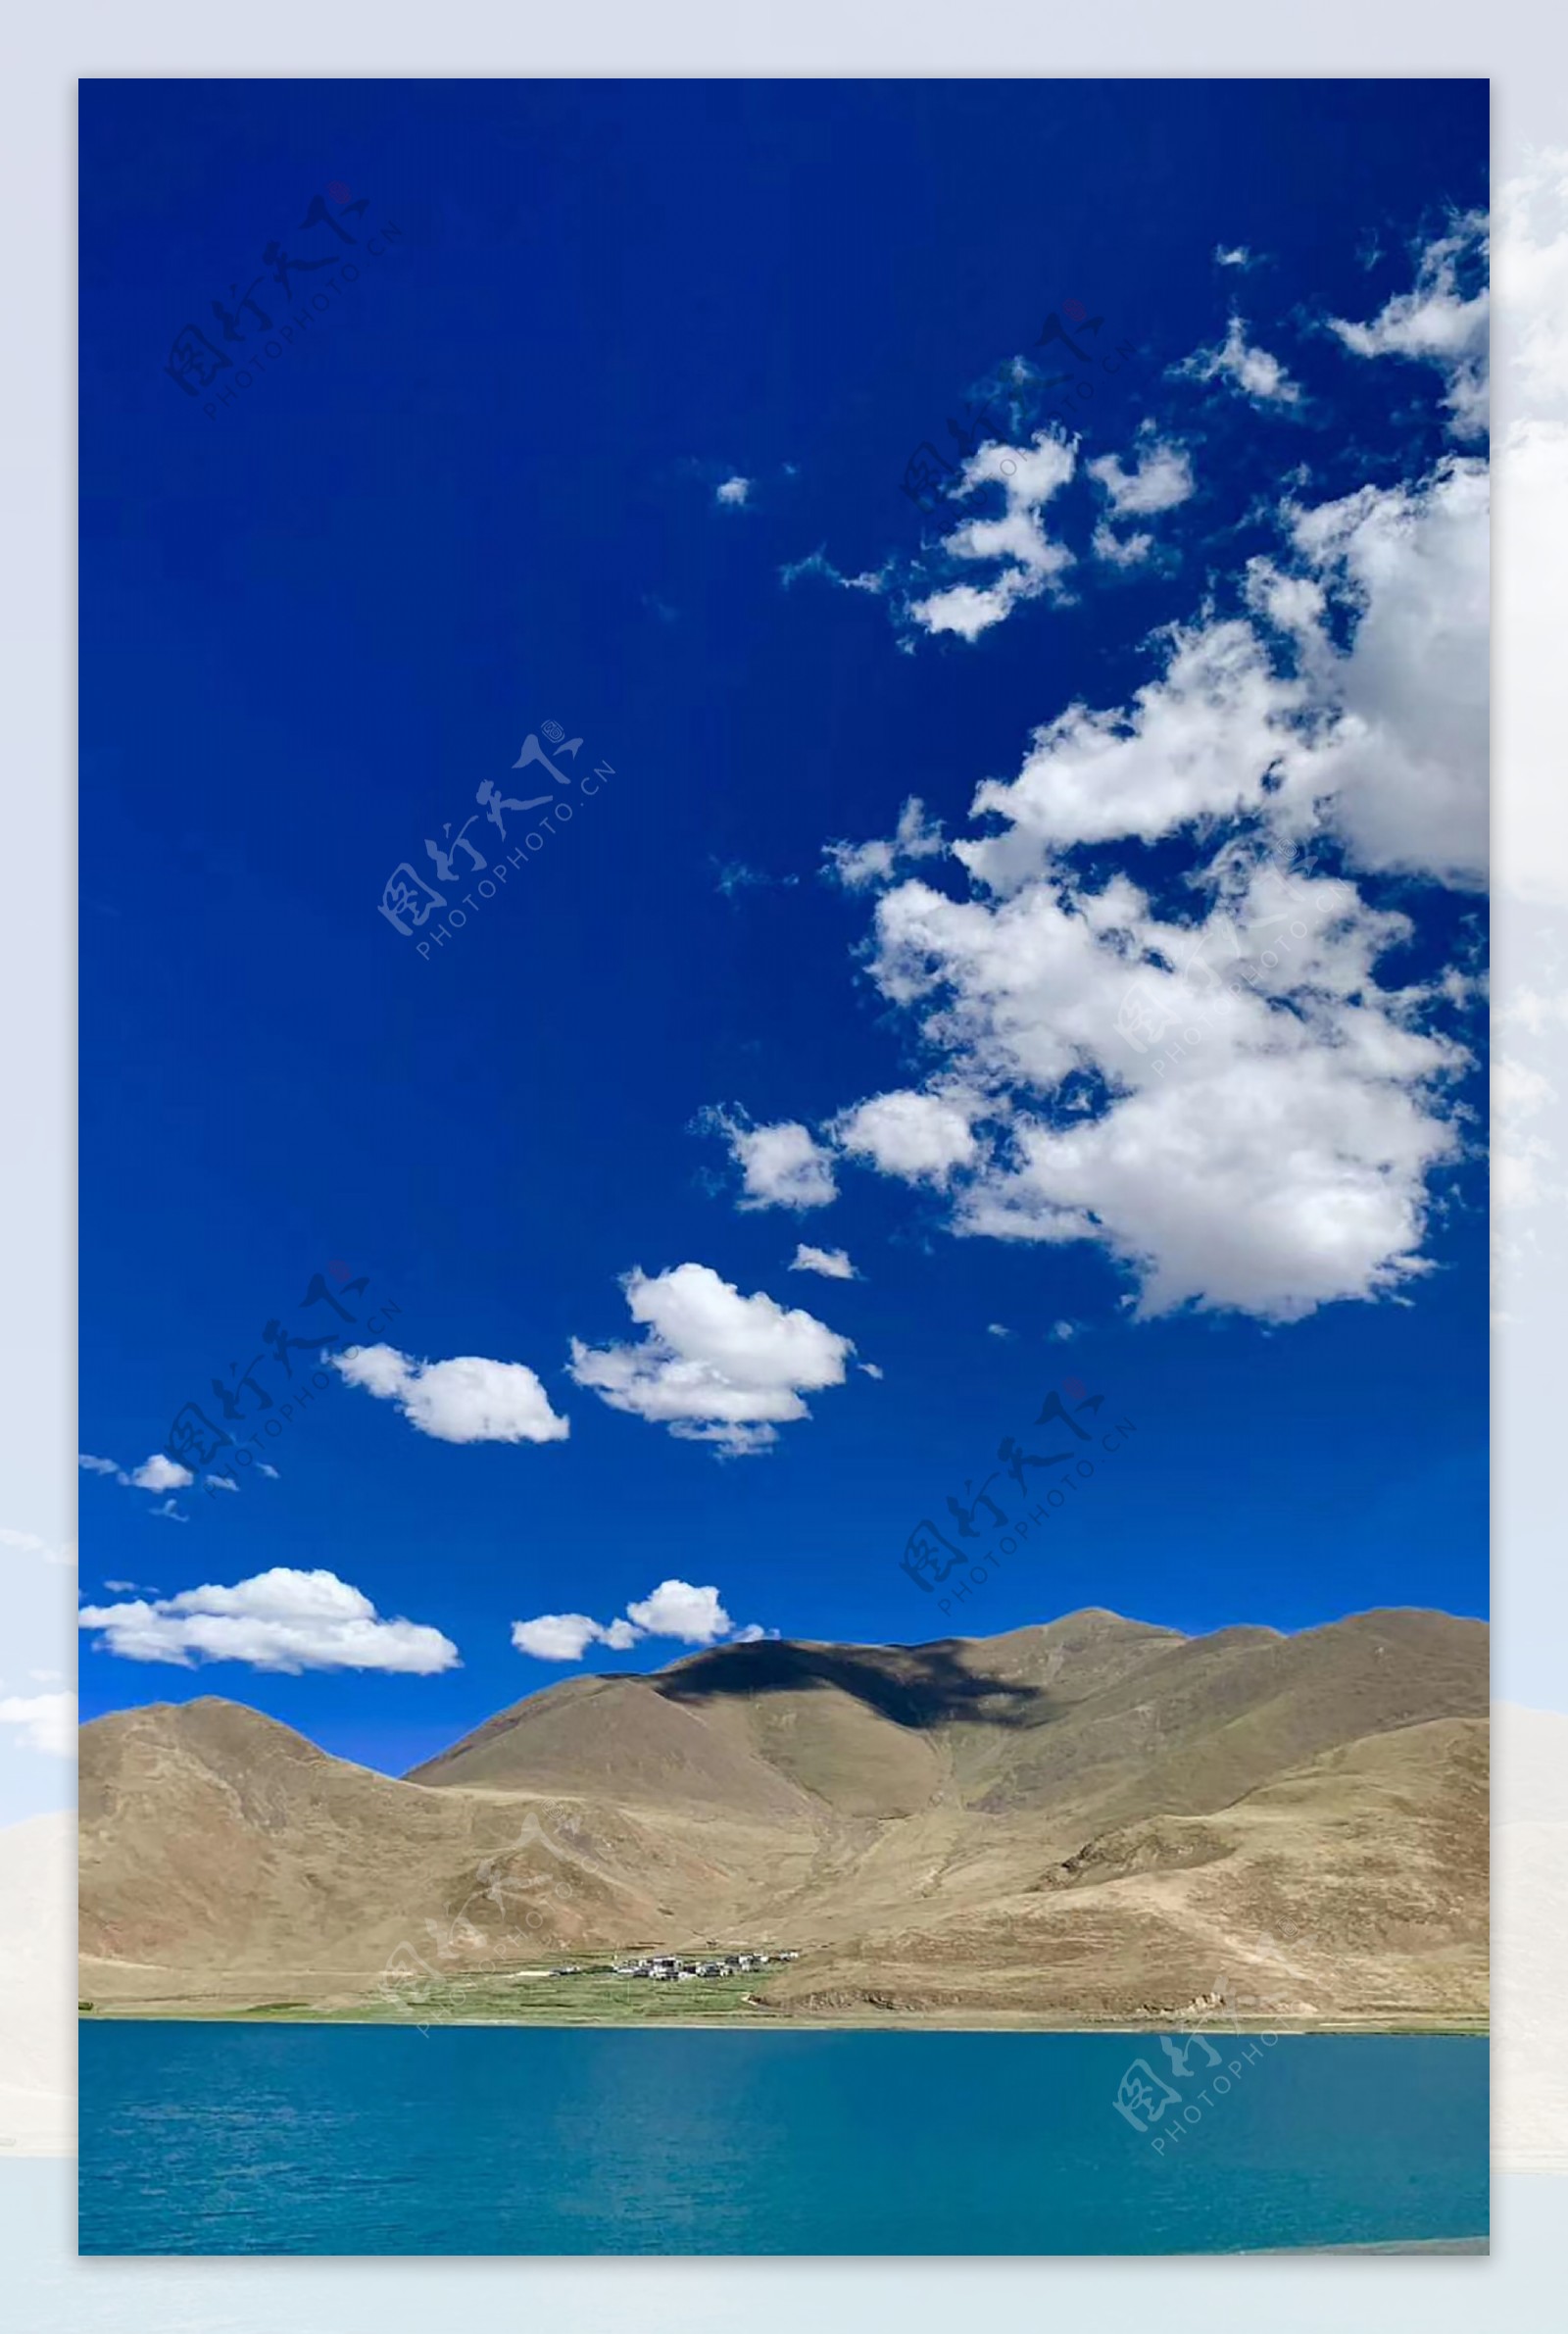 蓝天白云山川湖泊西藏